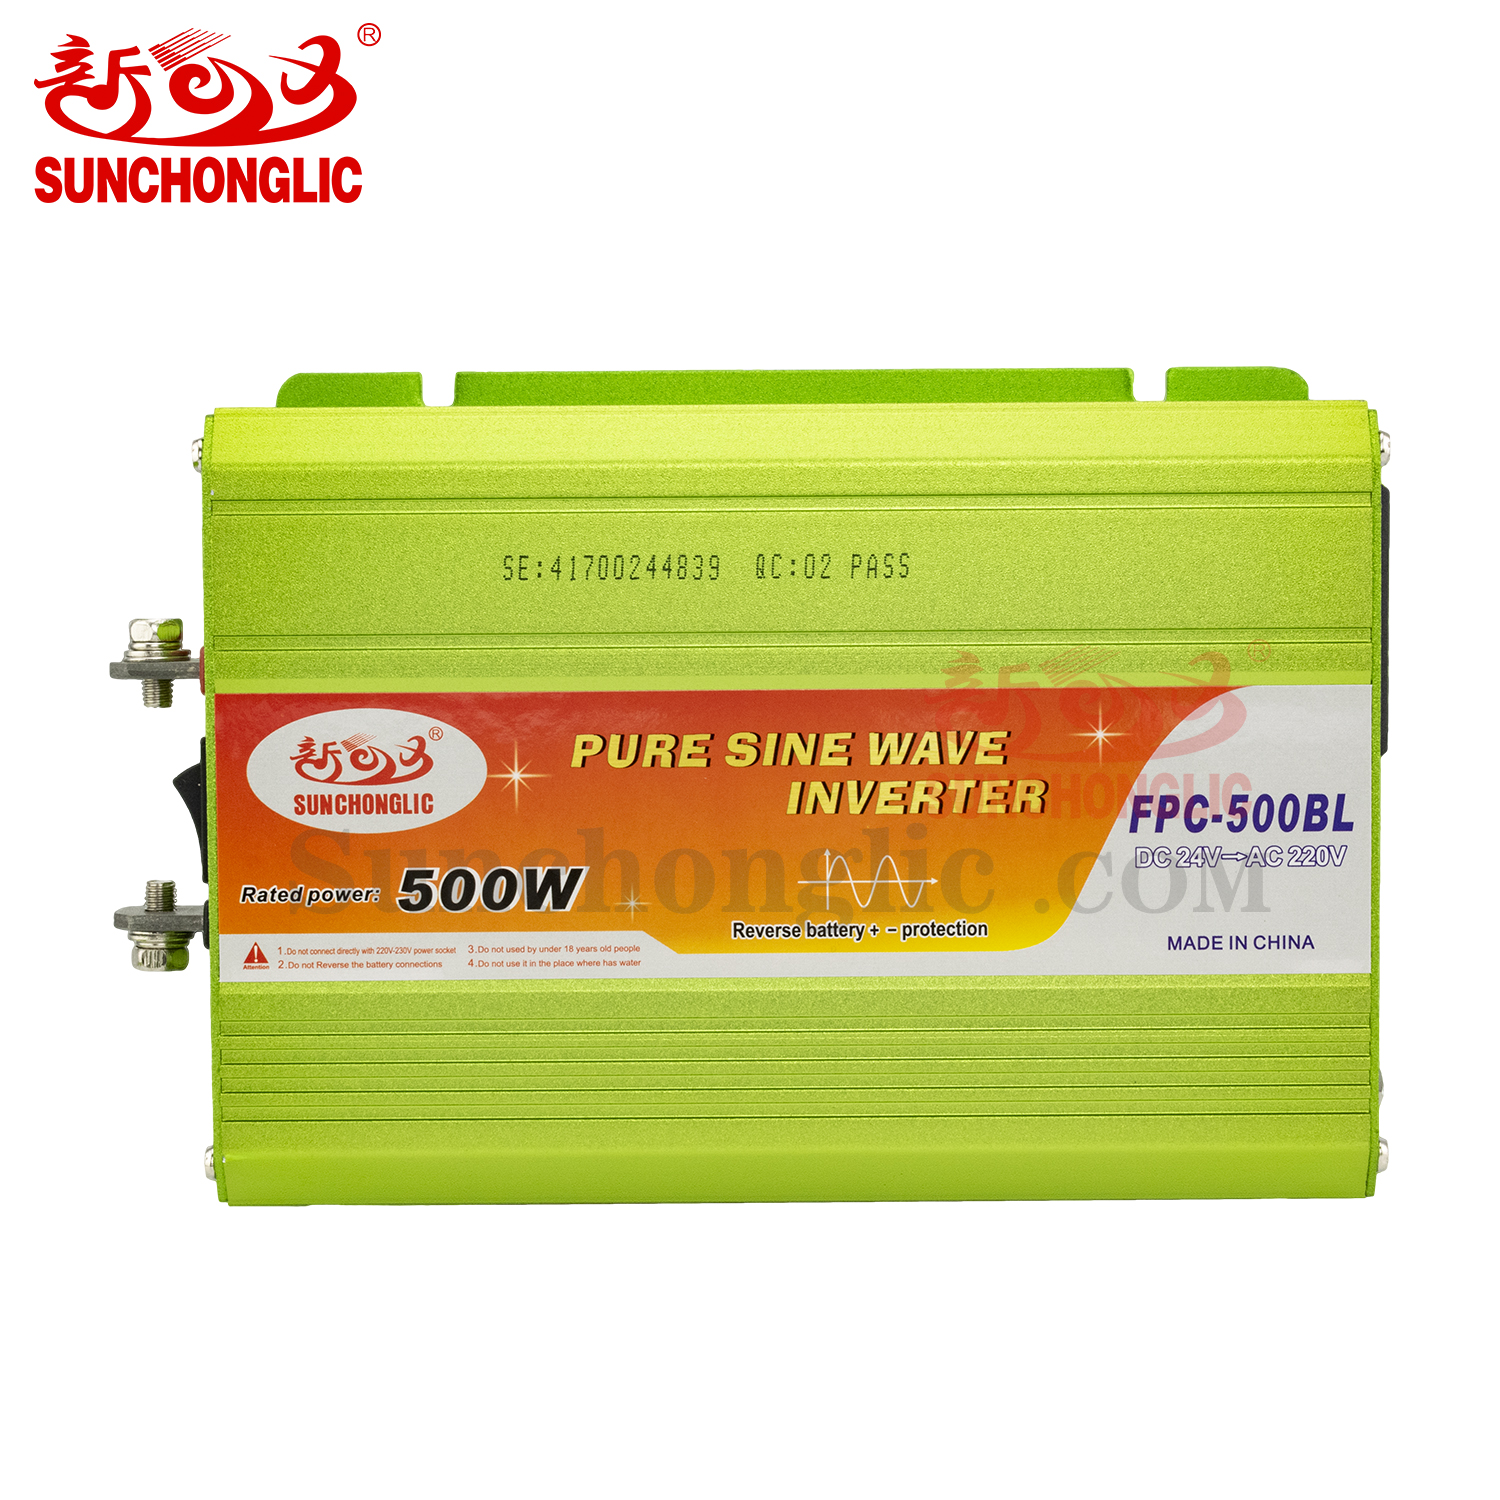 Pure Sine Wave Inverter - FPC-500BL